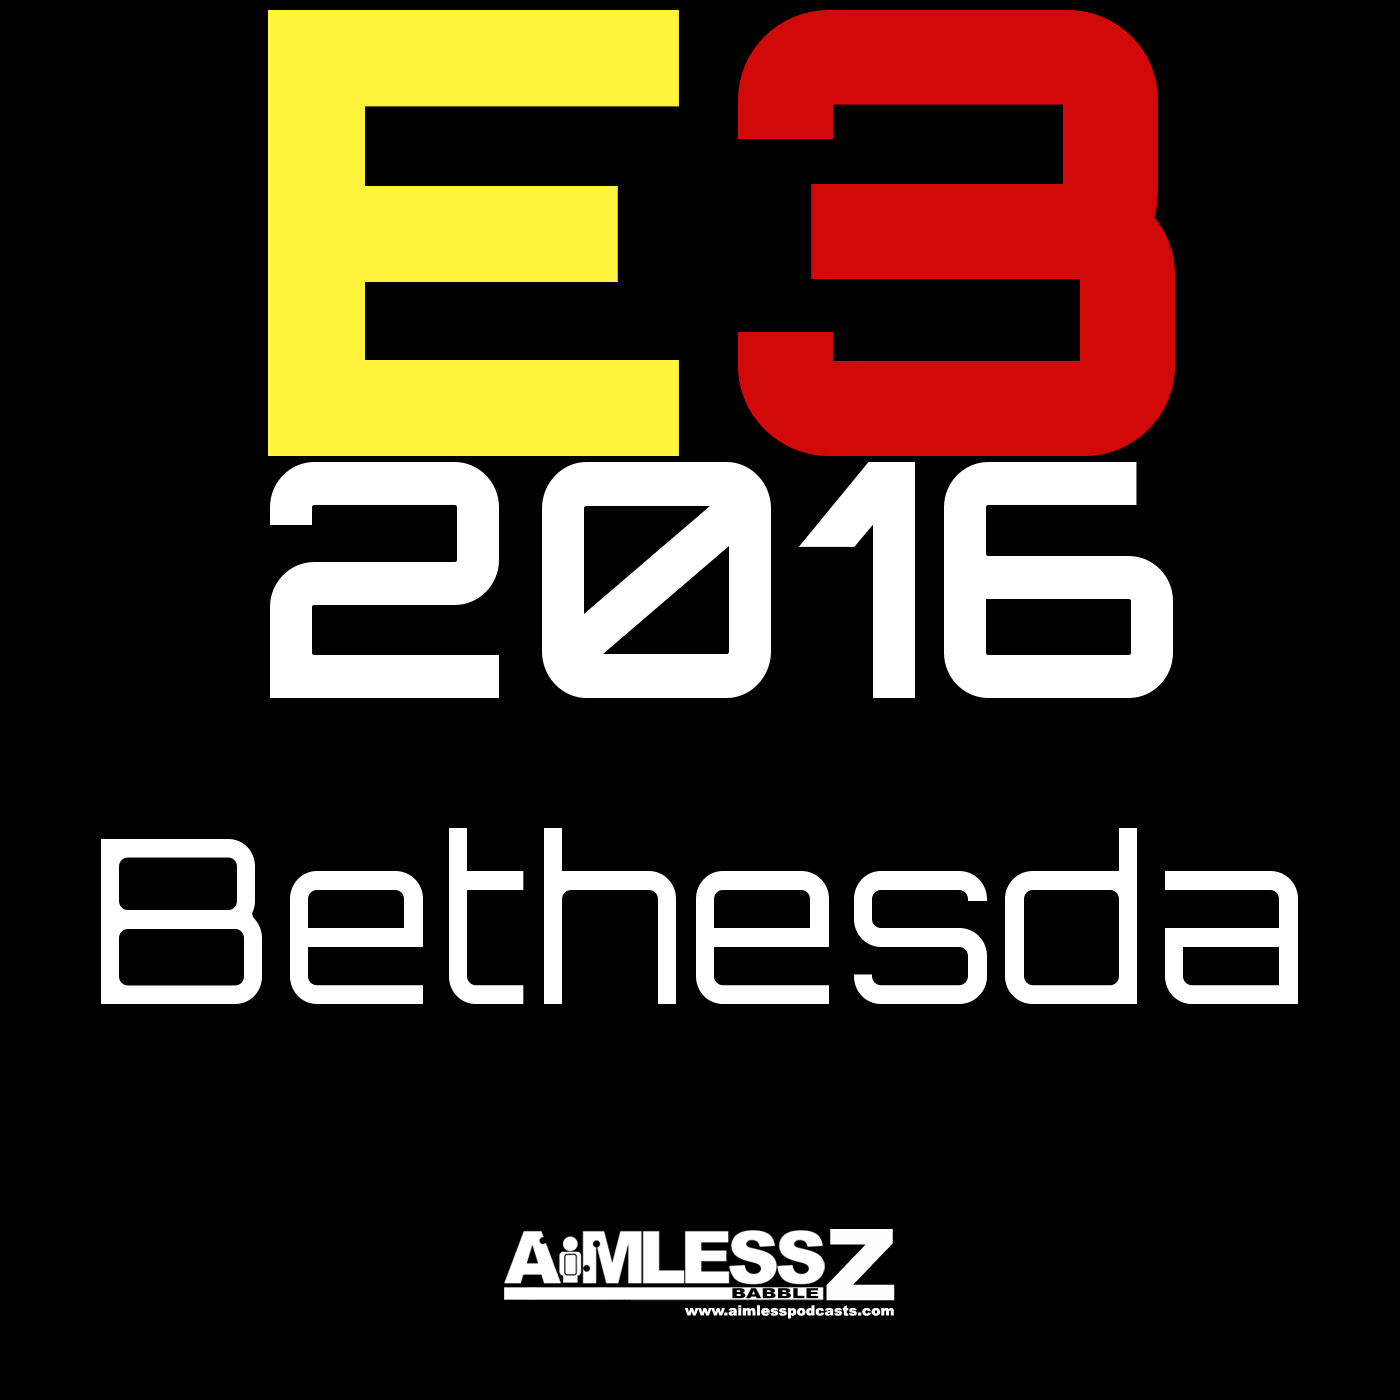 E3 2016: Bethesda Press Briefing Impressions